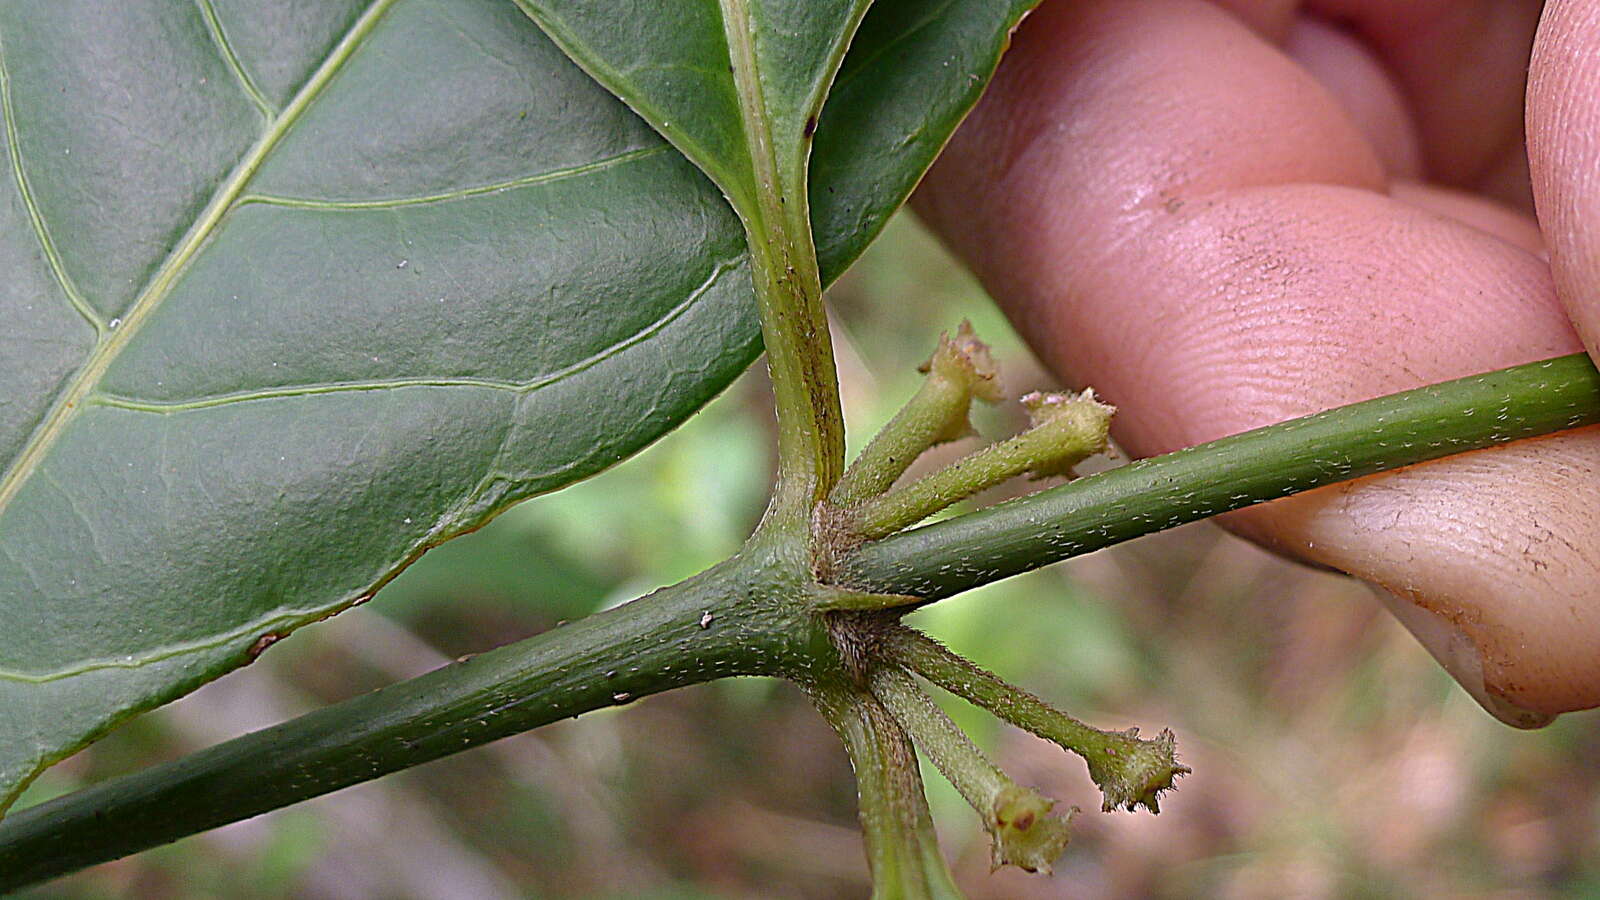 Image of Rubiaceae